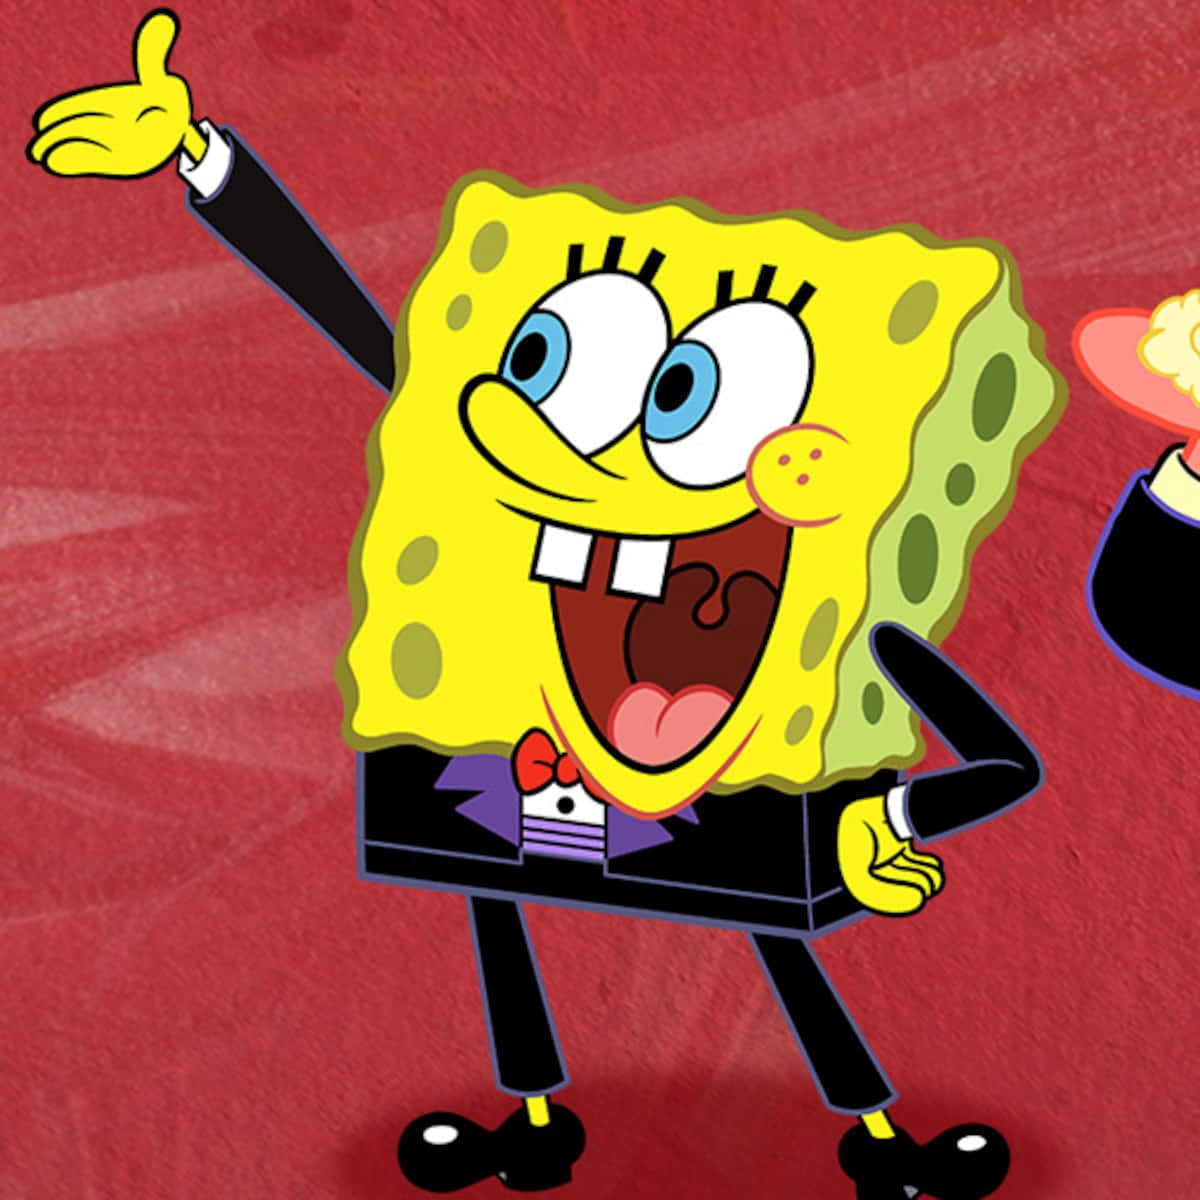 Vänta,bild På Kyparen Spongebob I En Kostym Som Bakgrundsbild Till Dator Eller Mobilskärmen.